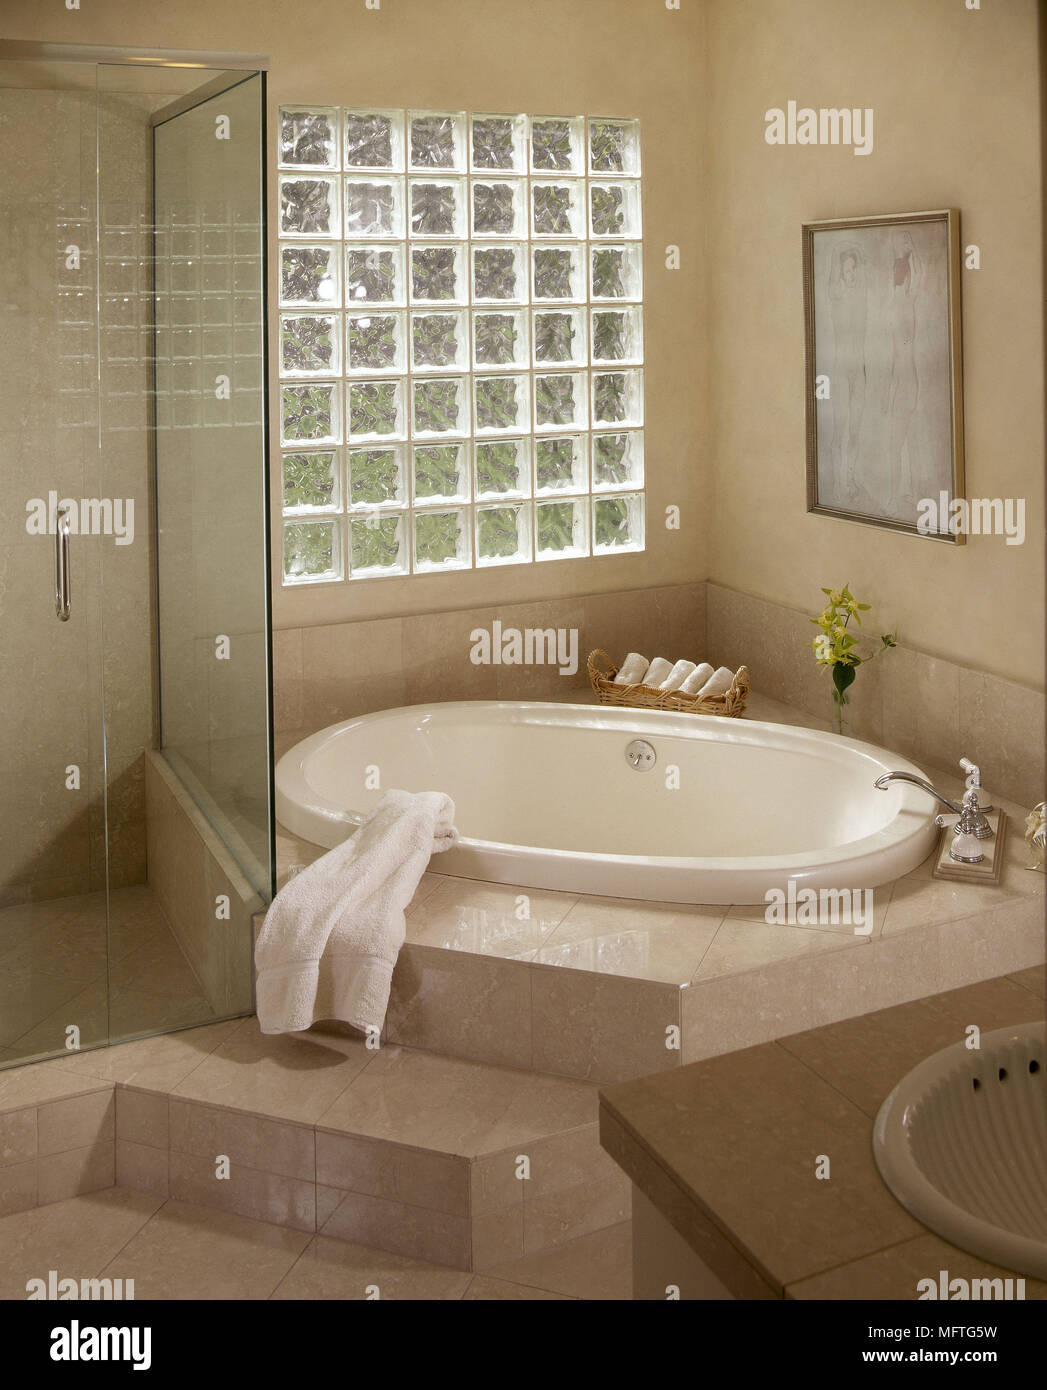 Baño moderno baño de inmersión de ladrillos de vidrio de la ventana de la  pantalla de cristal ducha baldosas interiores baños duchas baños de  azulejos de colores cálidos Fotografía de stock -